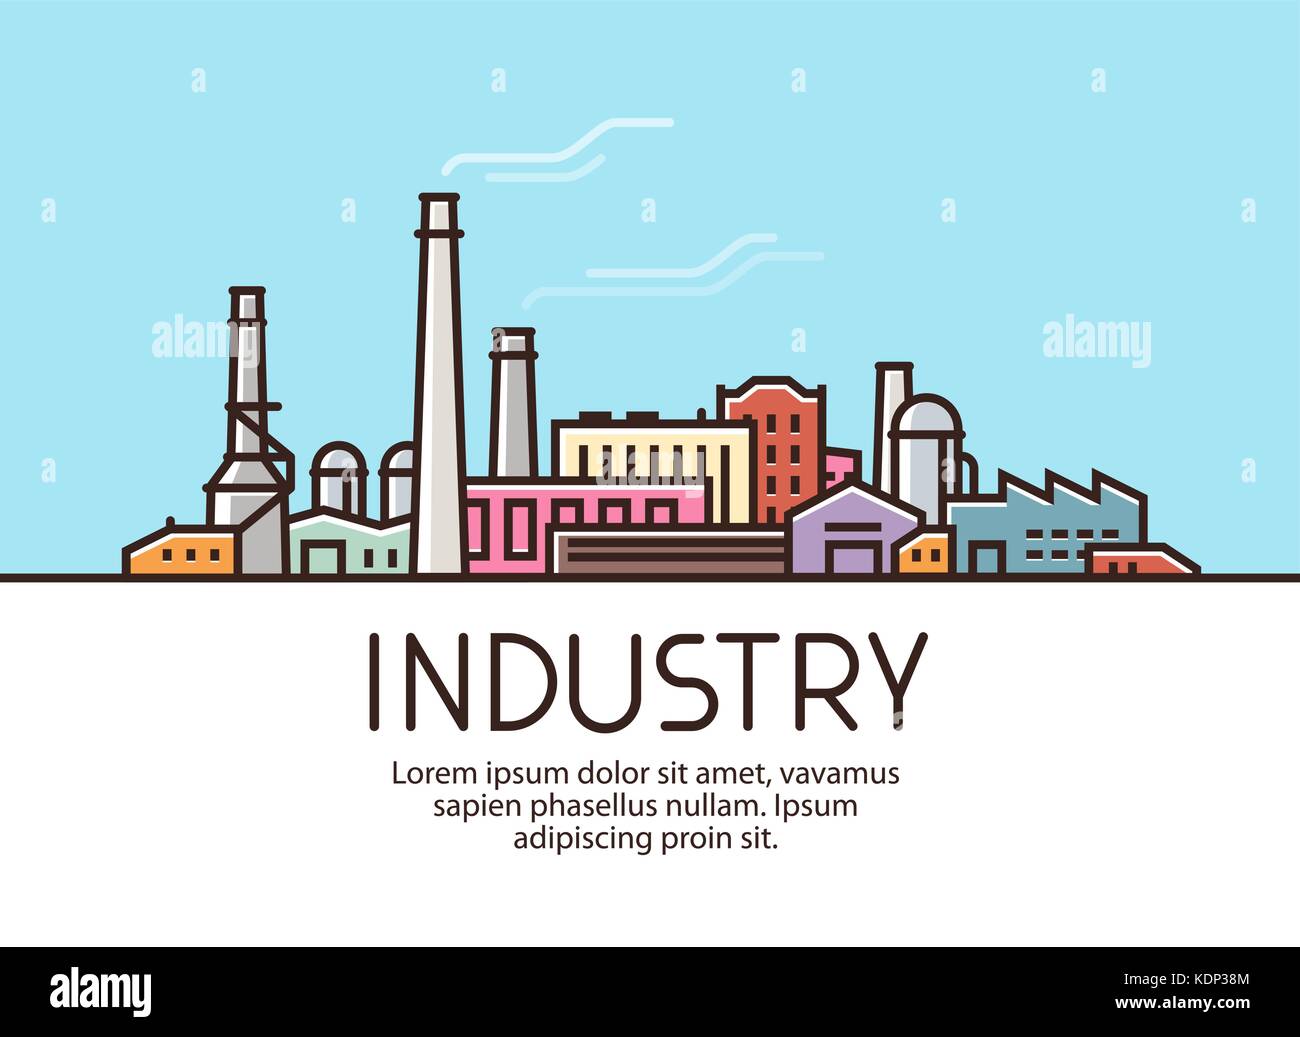 Industrie Banner. Die industrielle Produktion, Fabrikgebäude Konzept. Vector Illustration Stock Vektor